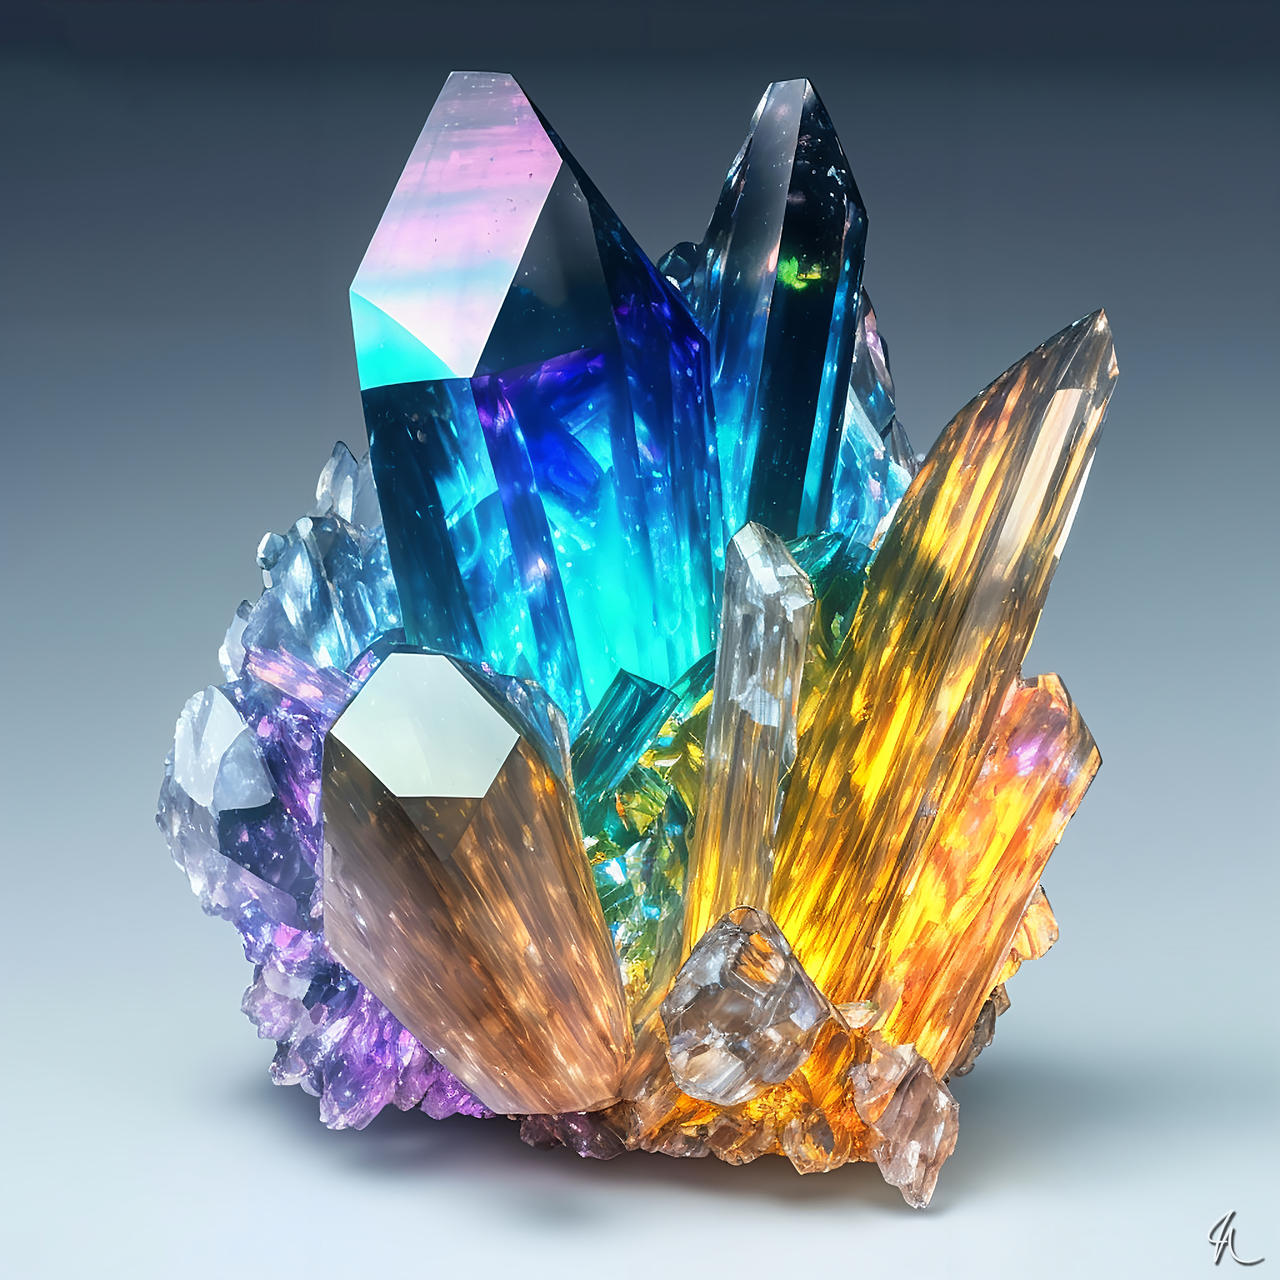 Crystal Cluster 3 by NeuralBlankes on DeviantArt